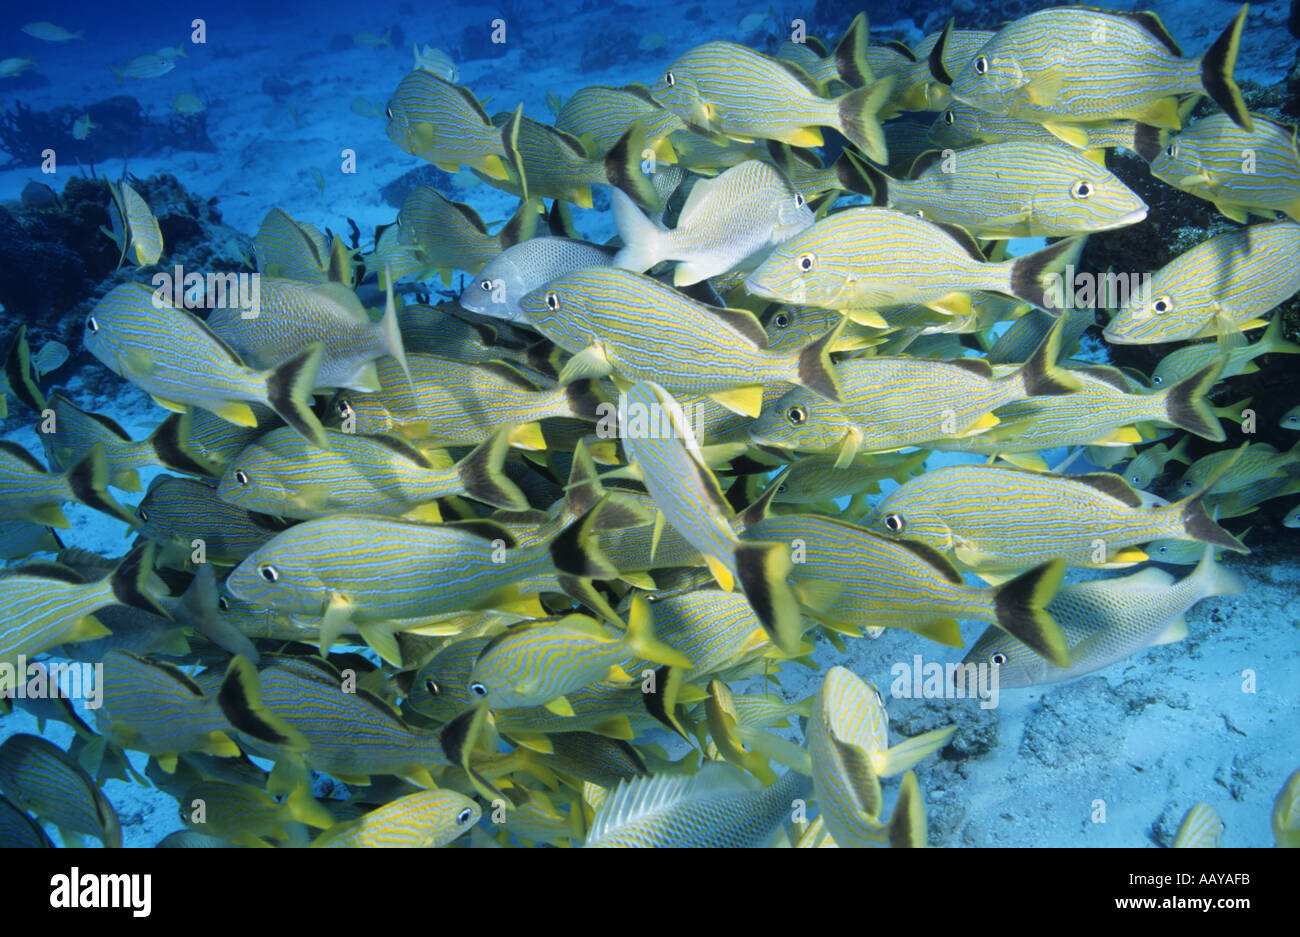 Messico, Isola di Cozumel, Paraiso - Mar dei Caraibi - Scuola di un Lutjan Seaperch Lutjanus Kasmira pesce Foto Stock